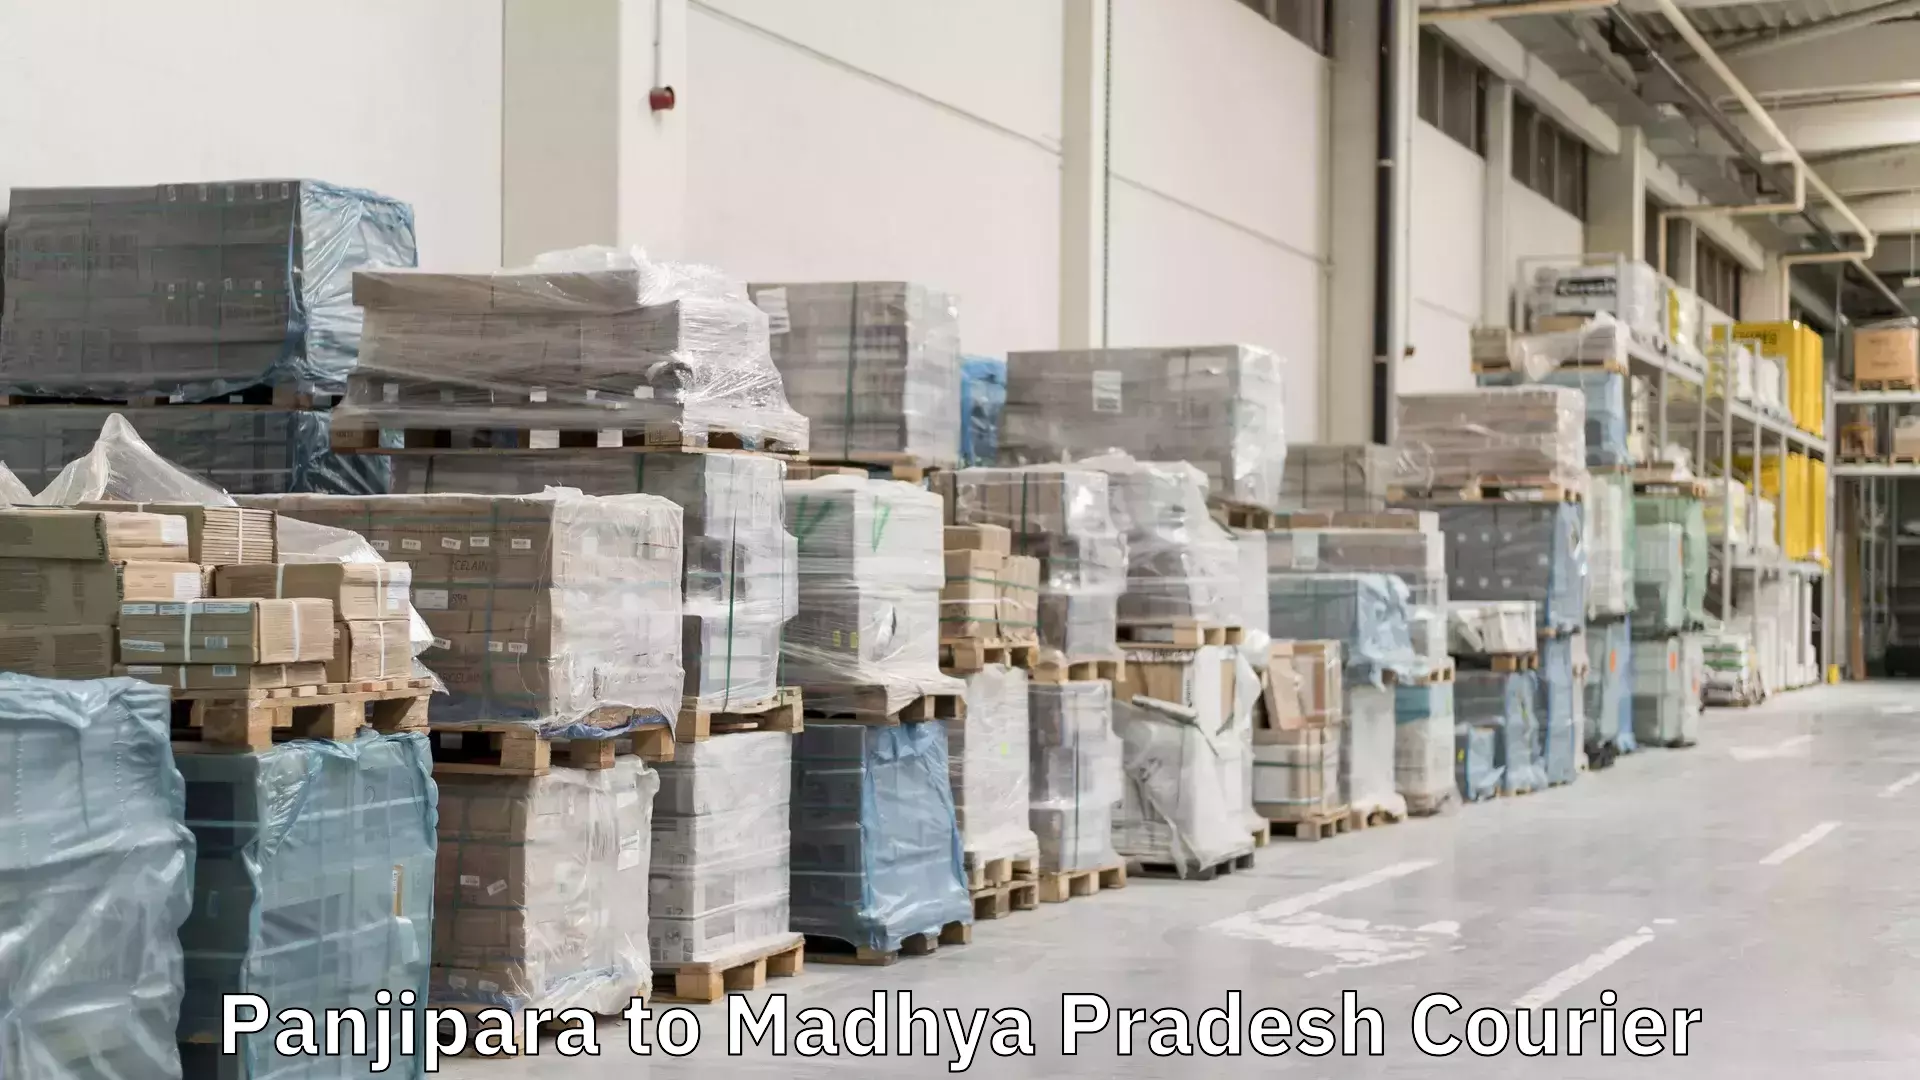 Reliable courier service Panjipara to Madhya Pradesh